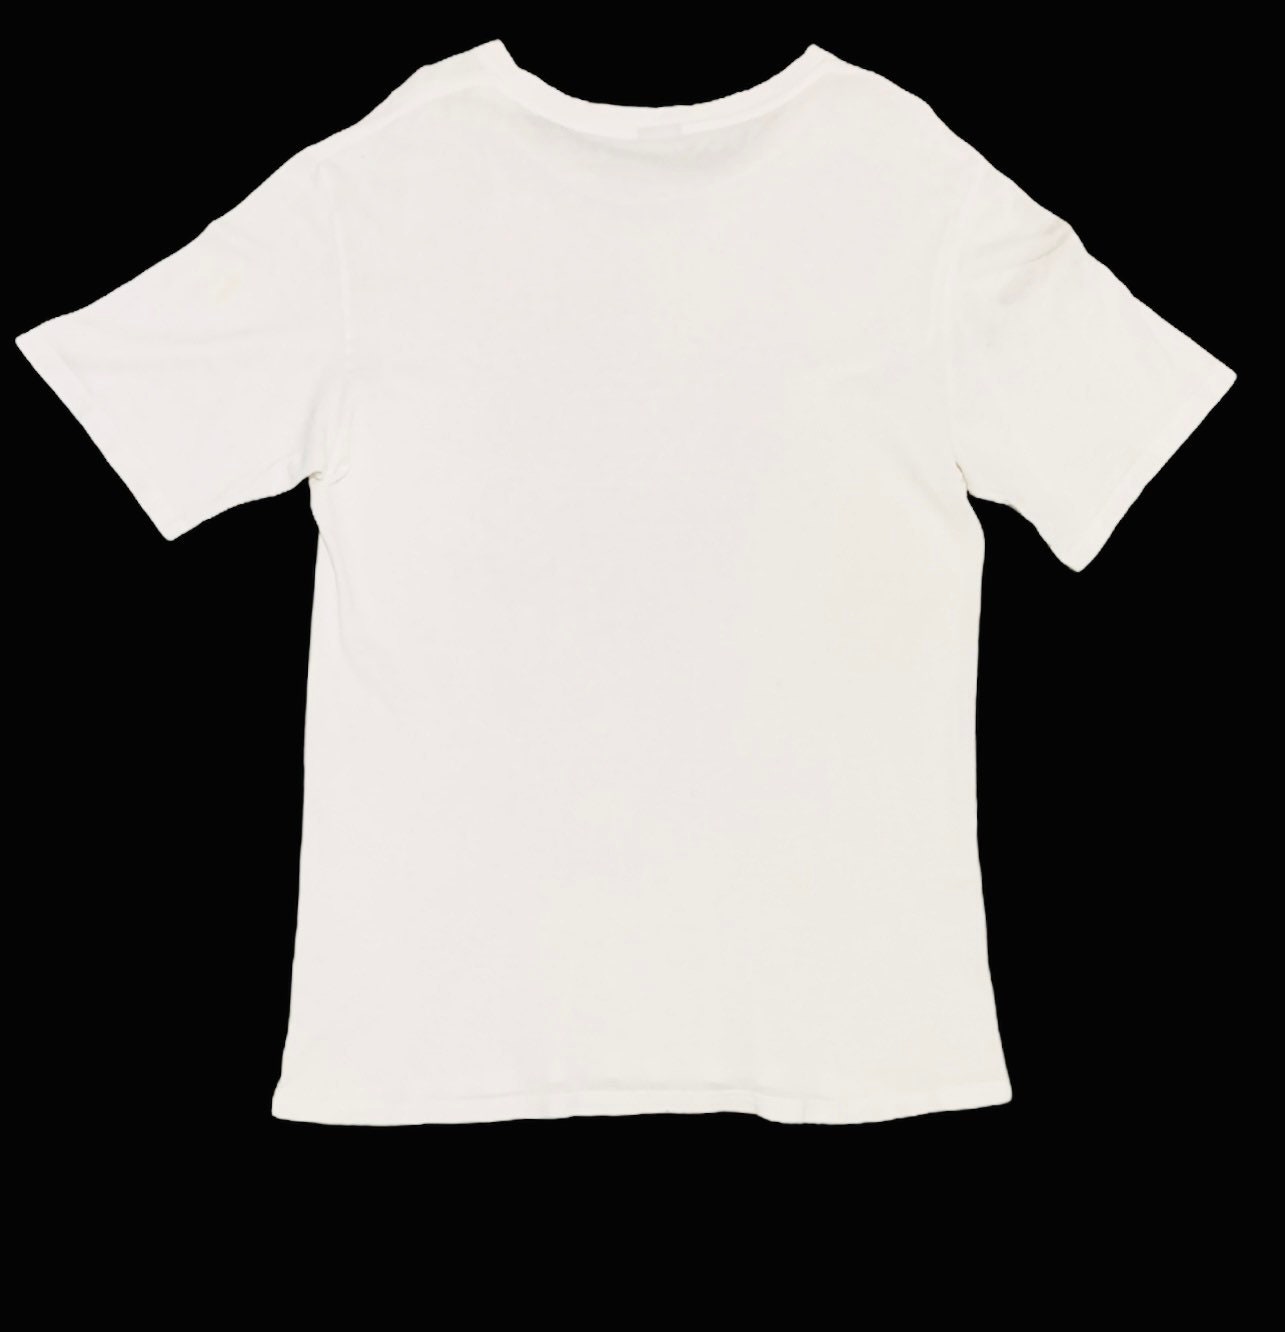 Rare Design Vintage Brand Number Nine T-shirt 2000s | Etsy